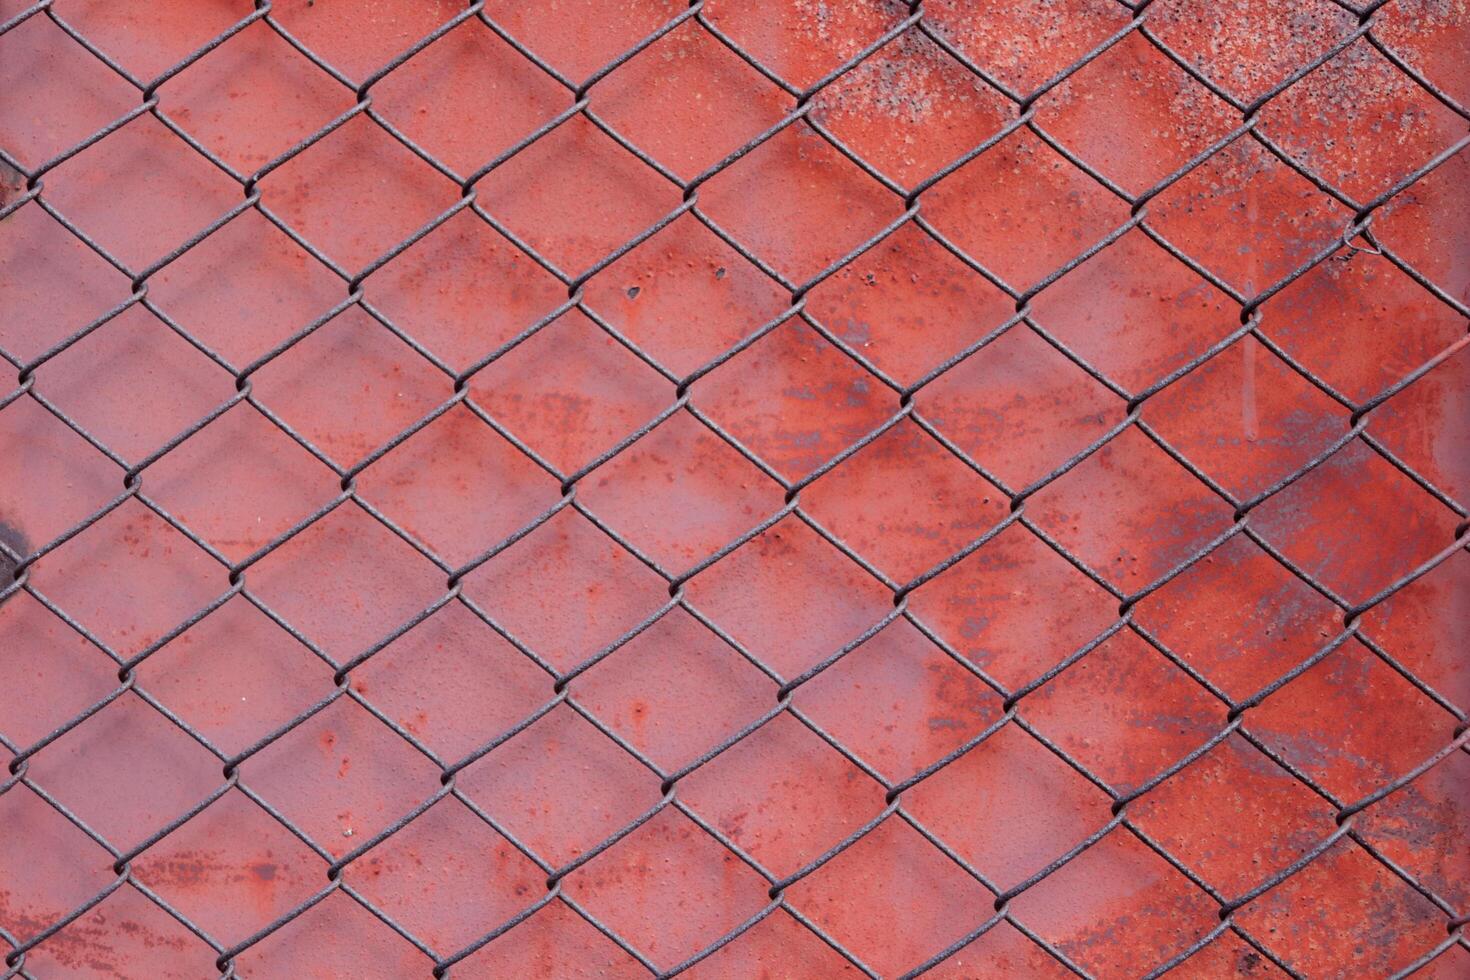 kedja länk fäktning maska eller tråd flor främre röd målad och förfall med rostig yta metall bakgrund. foto